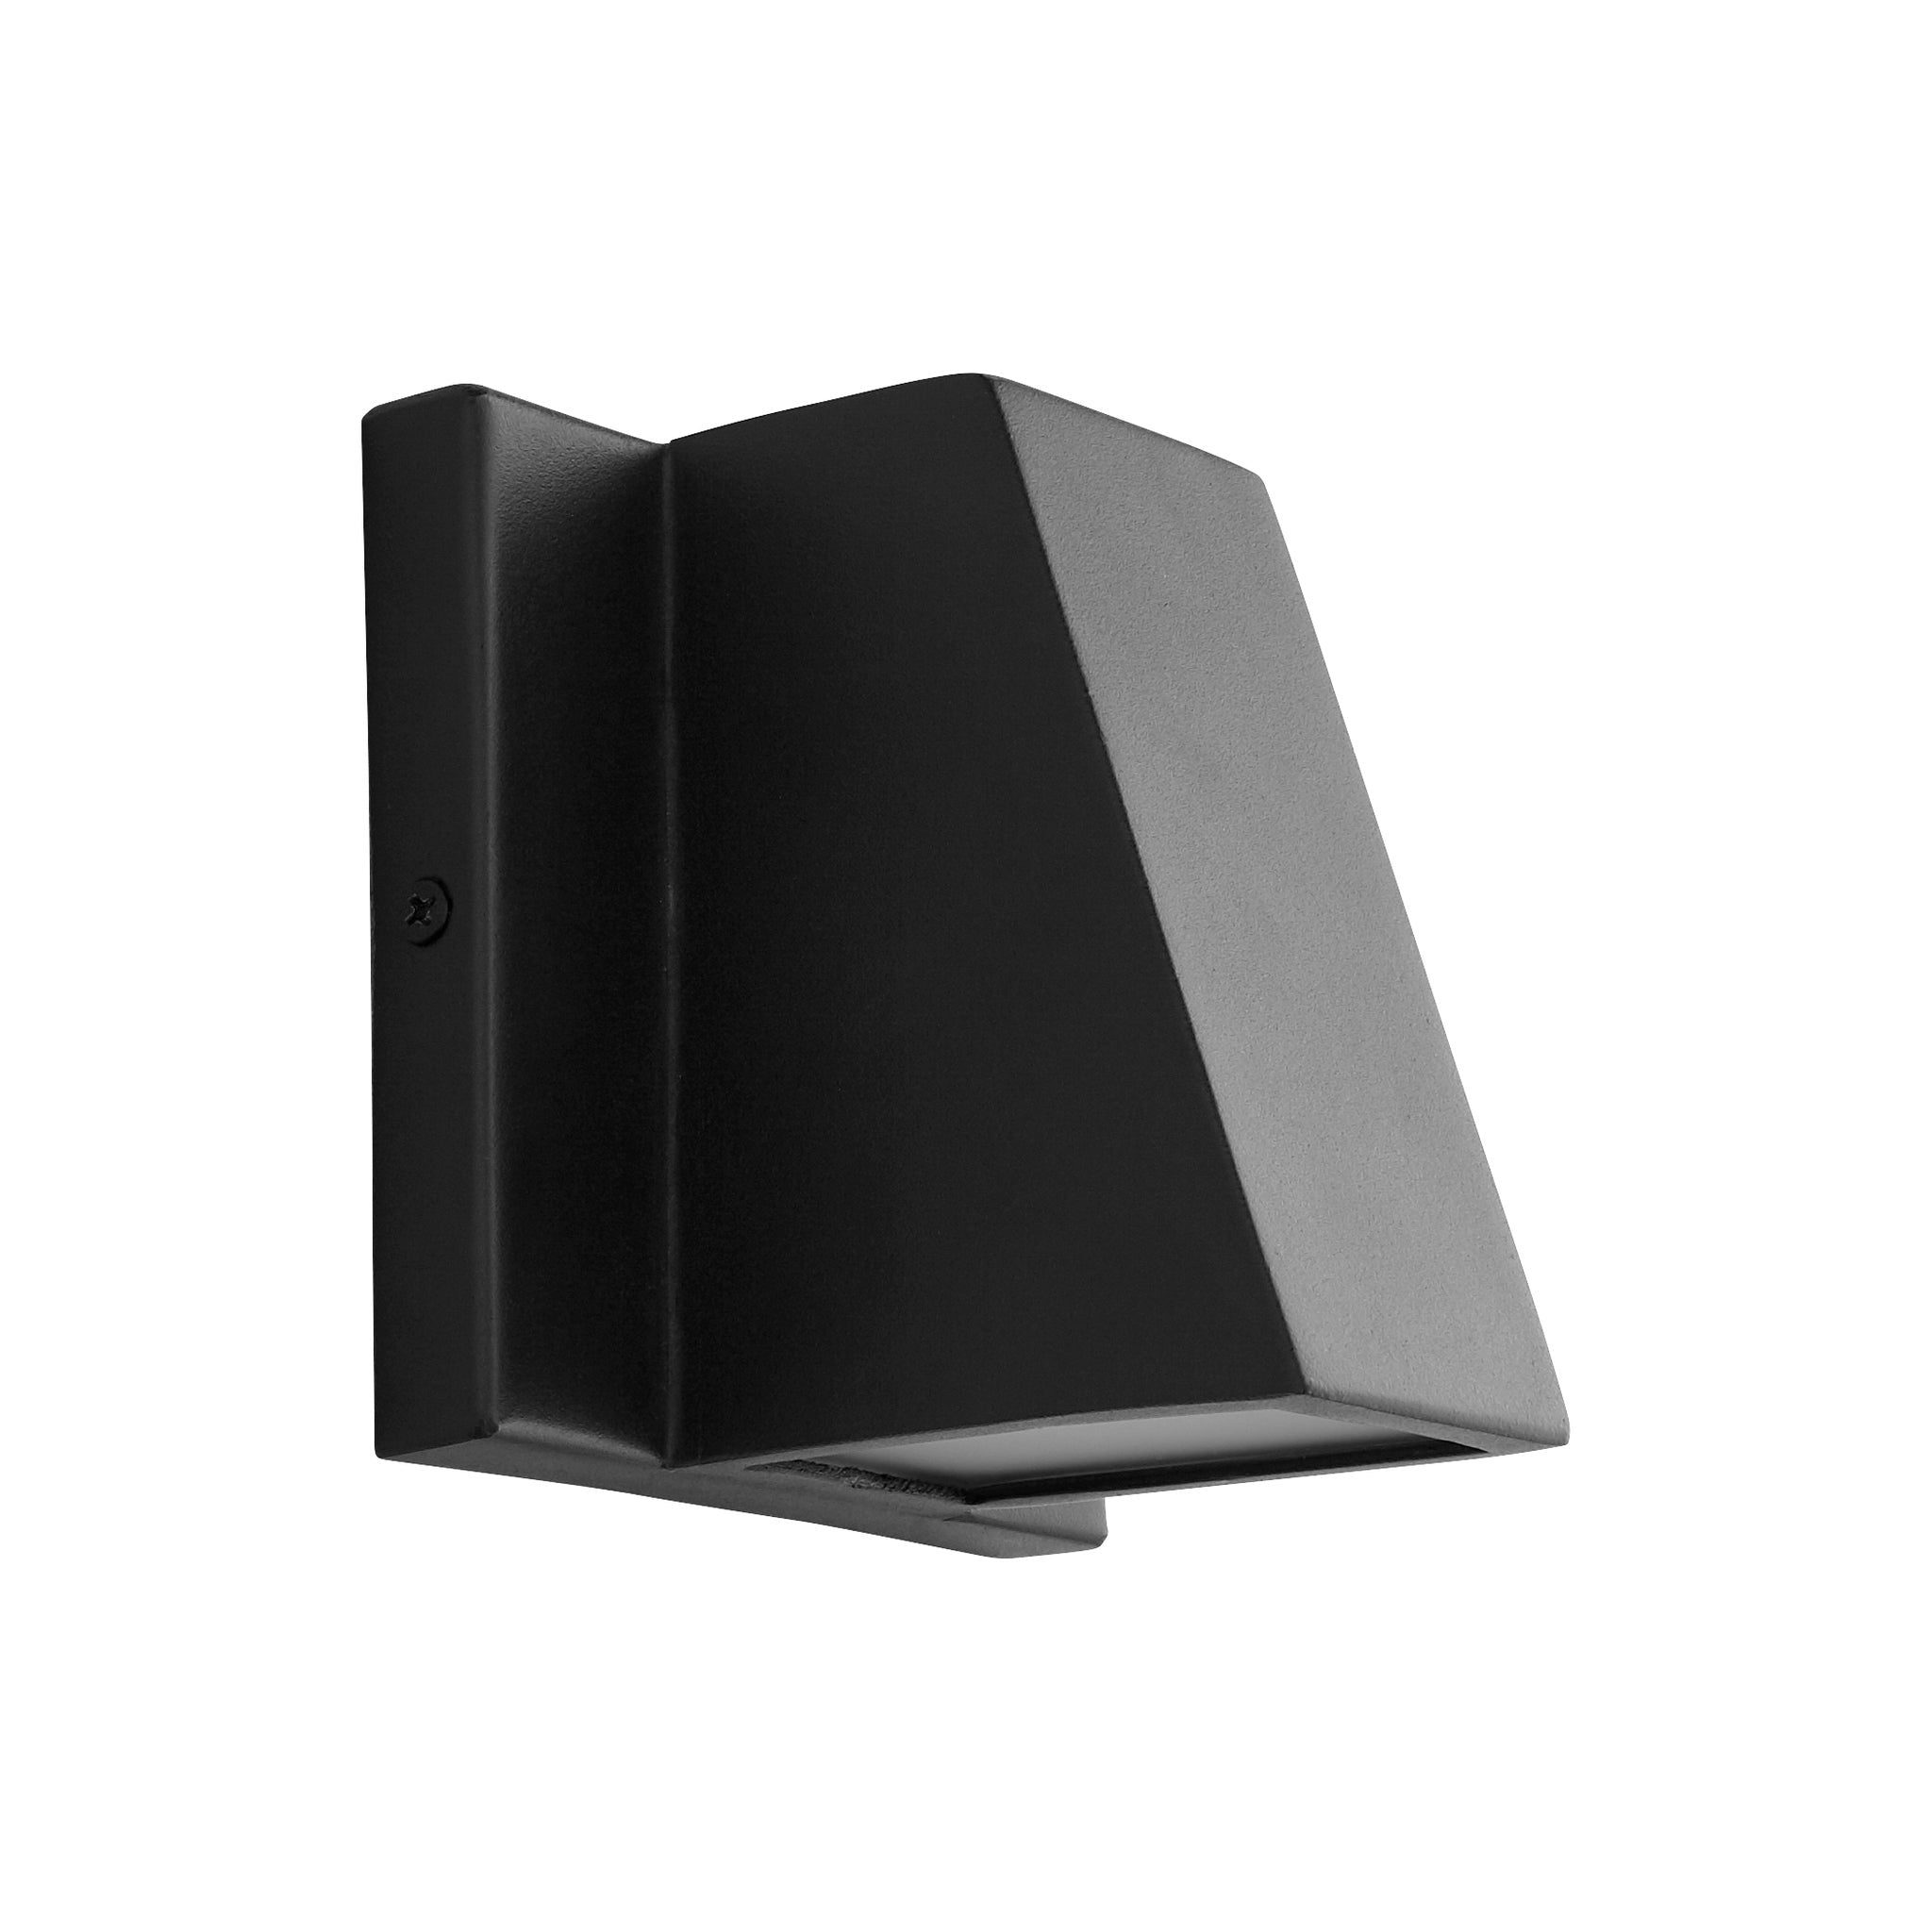 Oxygen TITAN 3-708-15 Outdoor Modern Wall Pack Light Fixture - Black